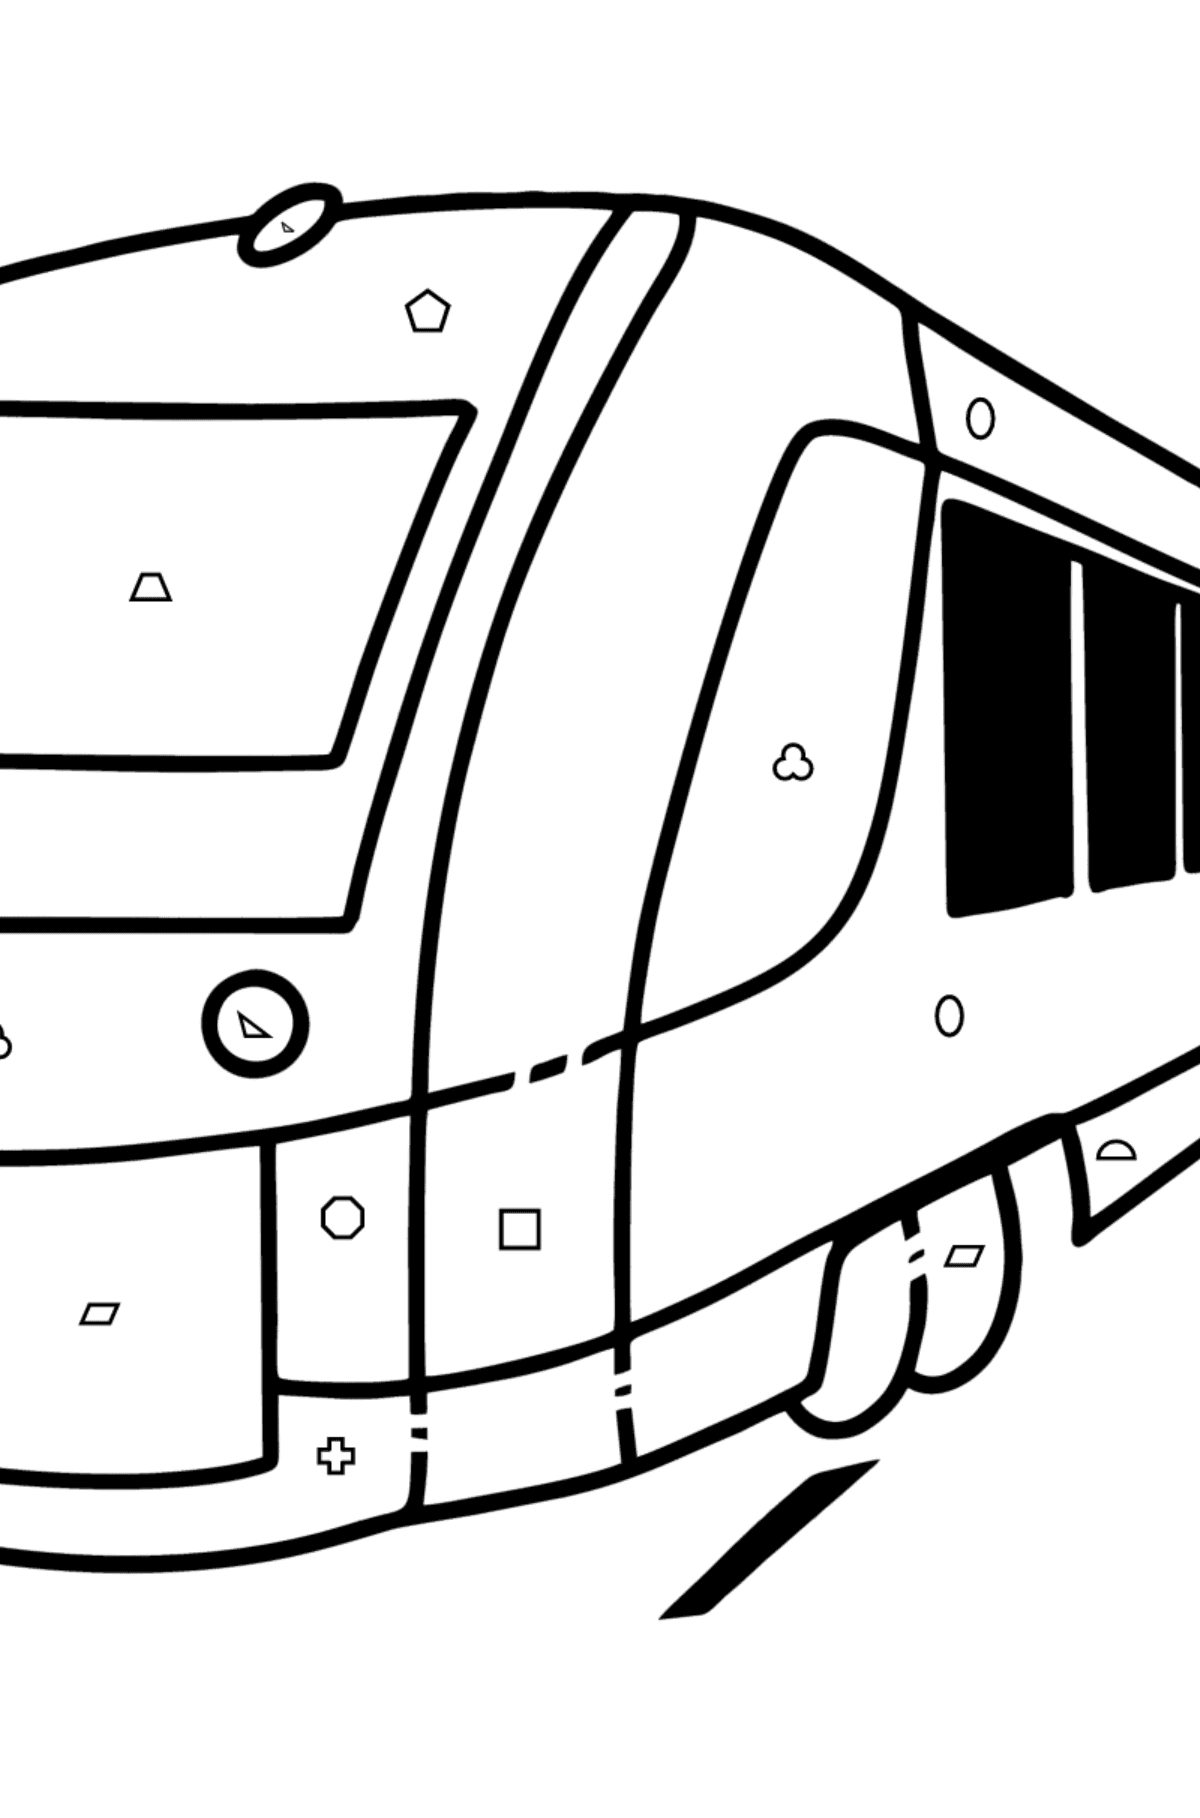 Desenho para colorir de Trem da cidade - Colorir por Formas Geométricas para Crianças